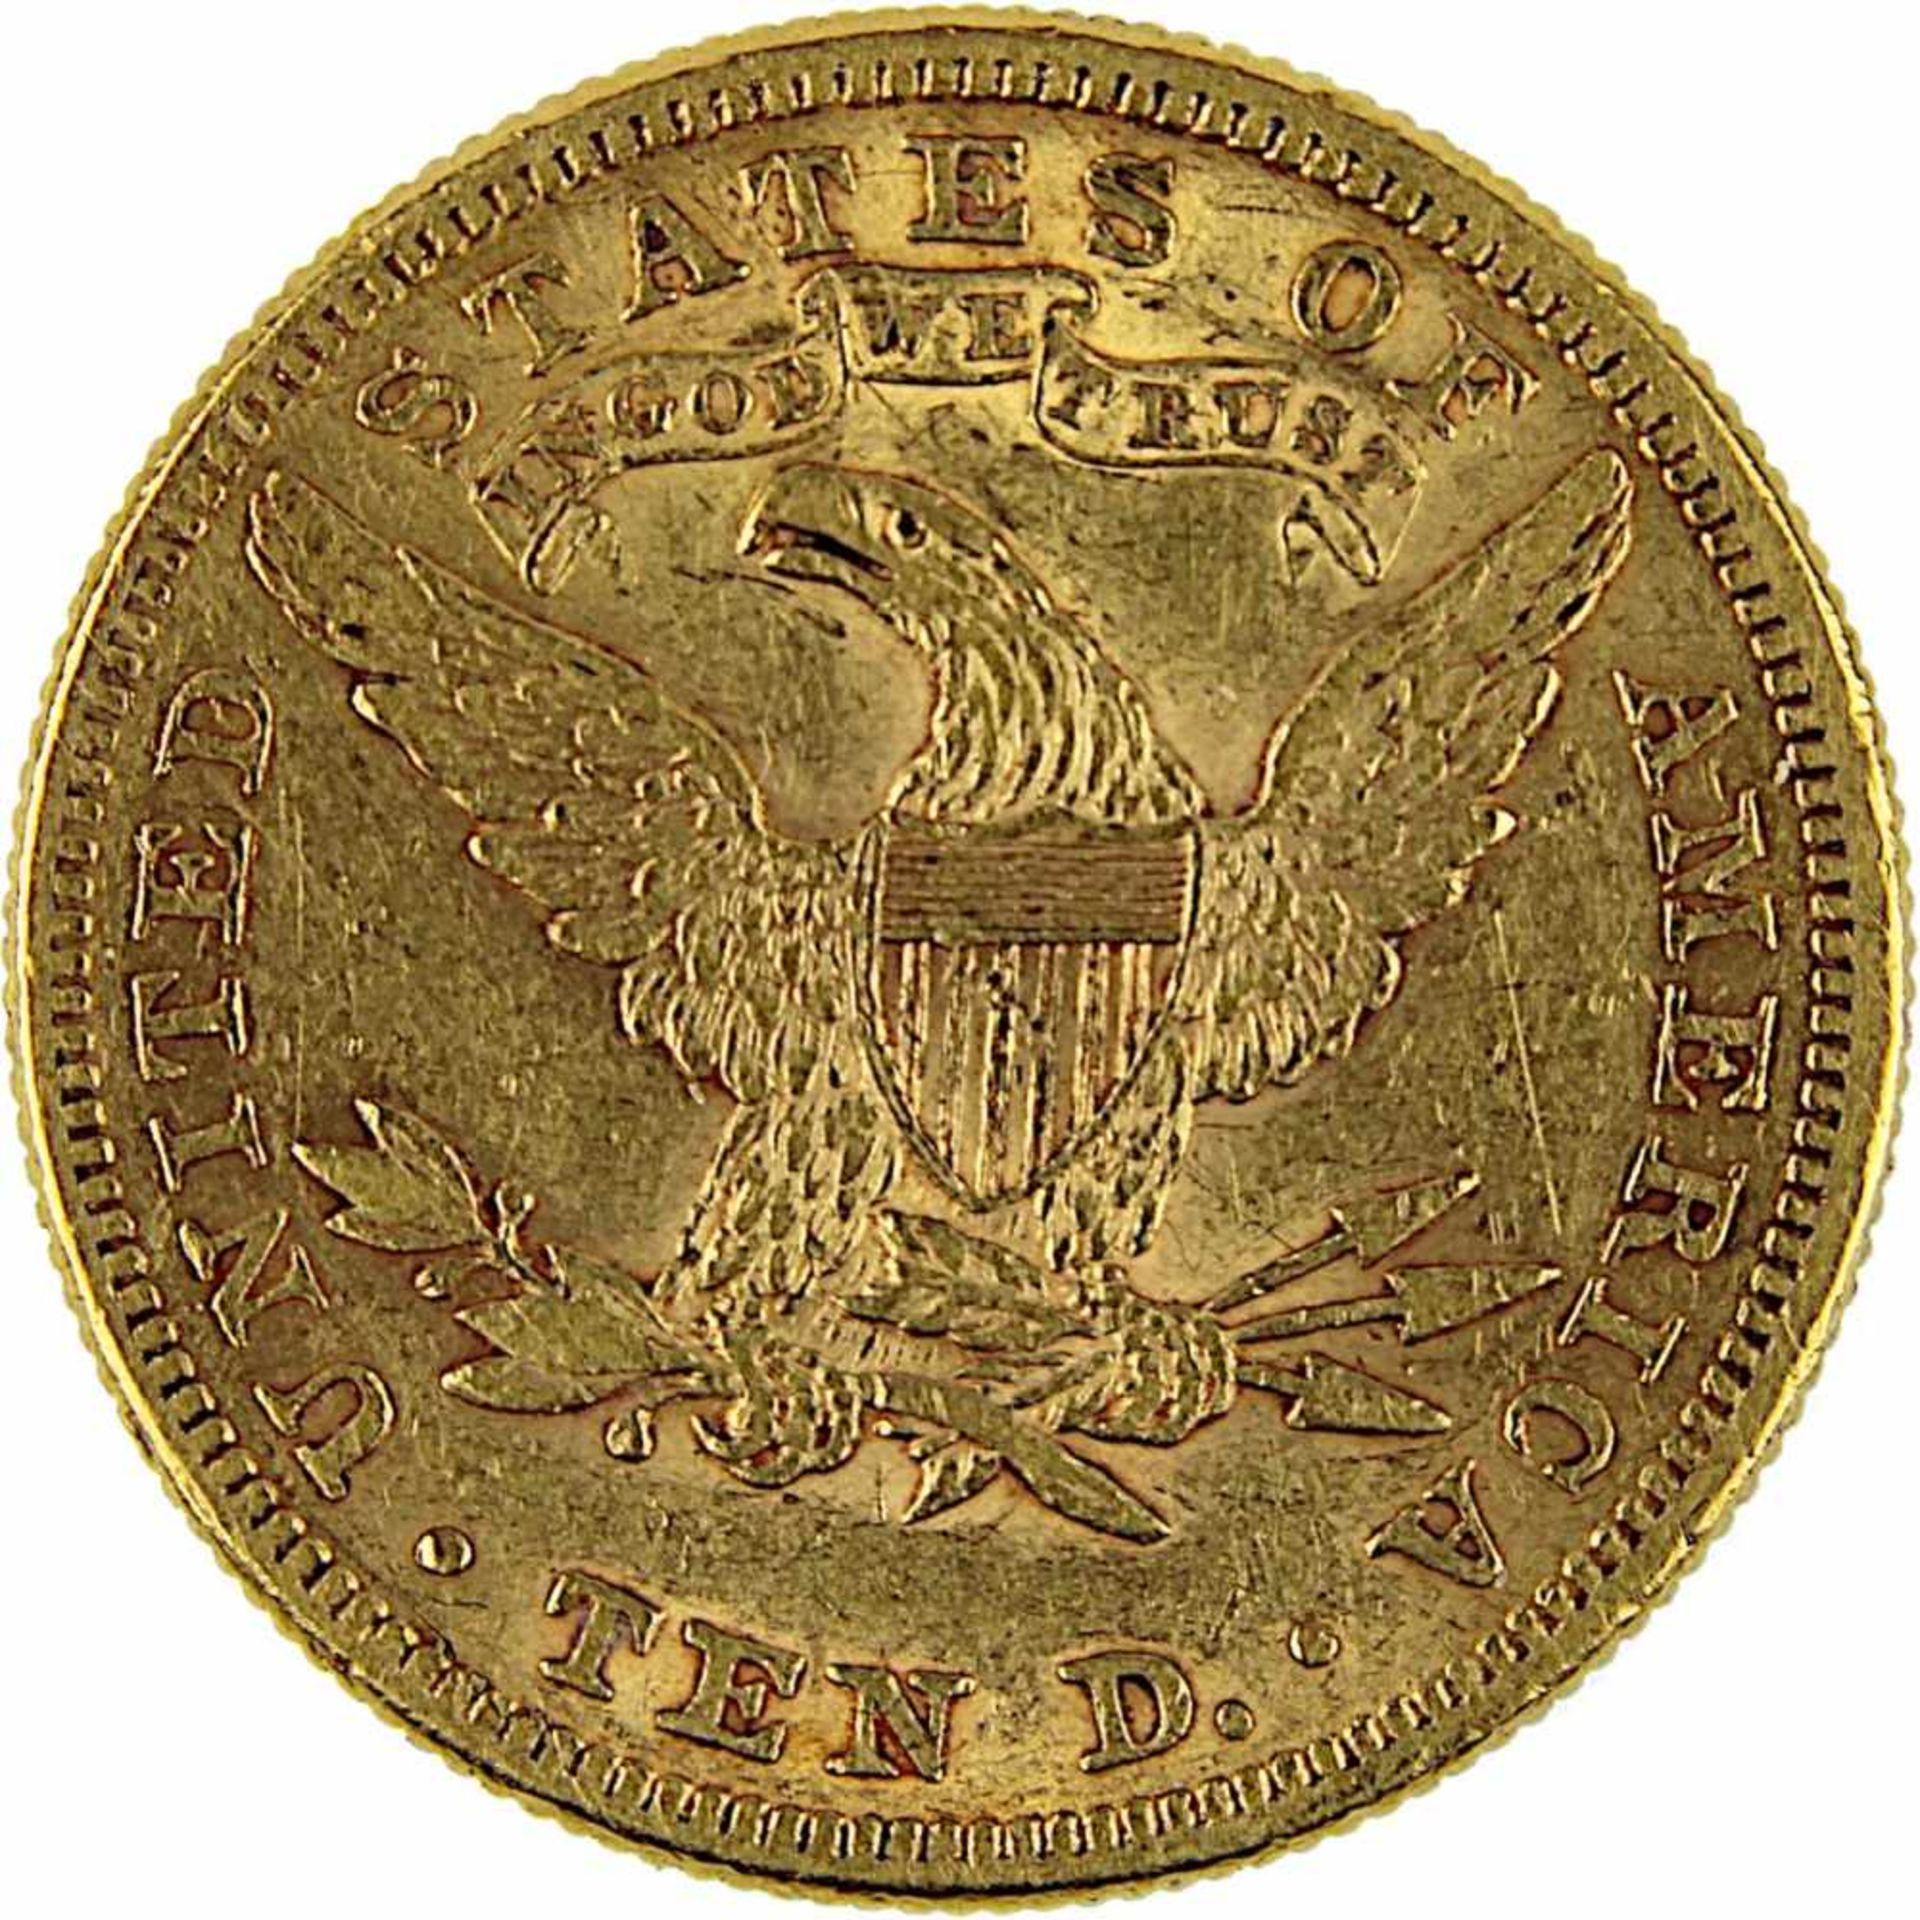 Goldmünze zu 10 Dollar, USA 1896, 900er Gold, 16,7 g, Coroned Head / Eagle, Erhaltung sehr schön - - Bild 3 aus 3